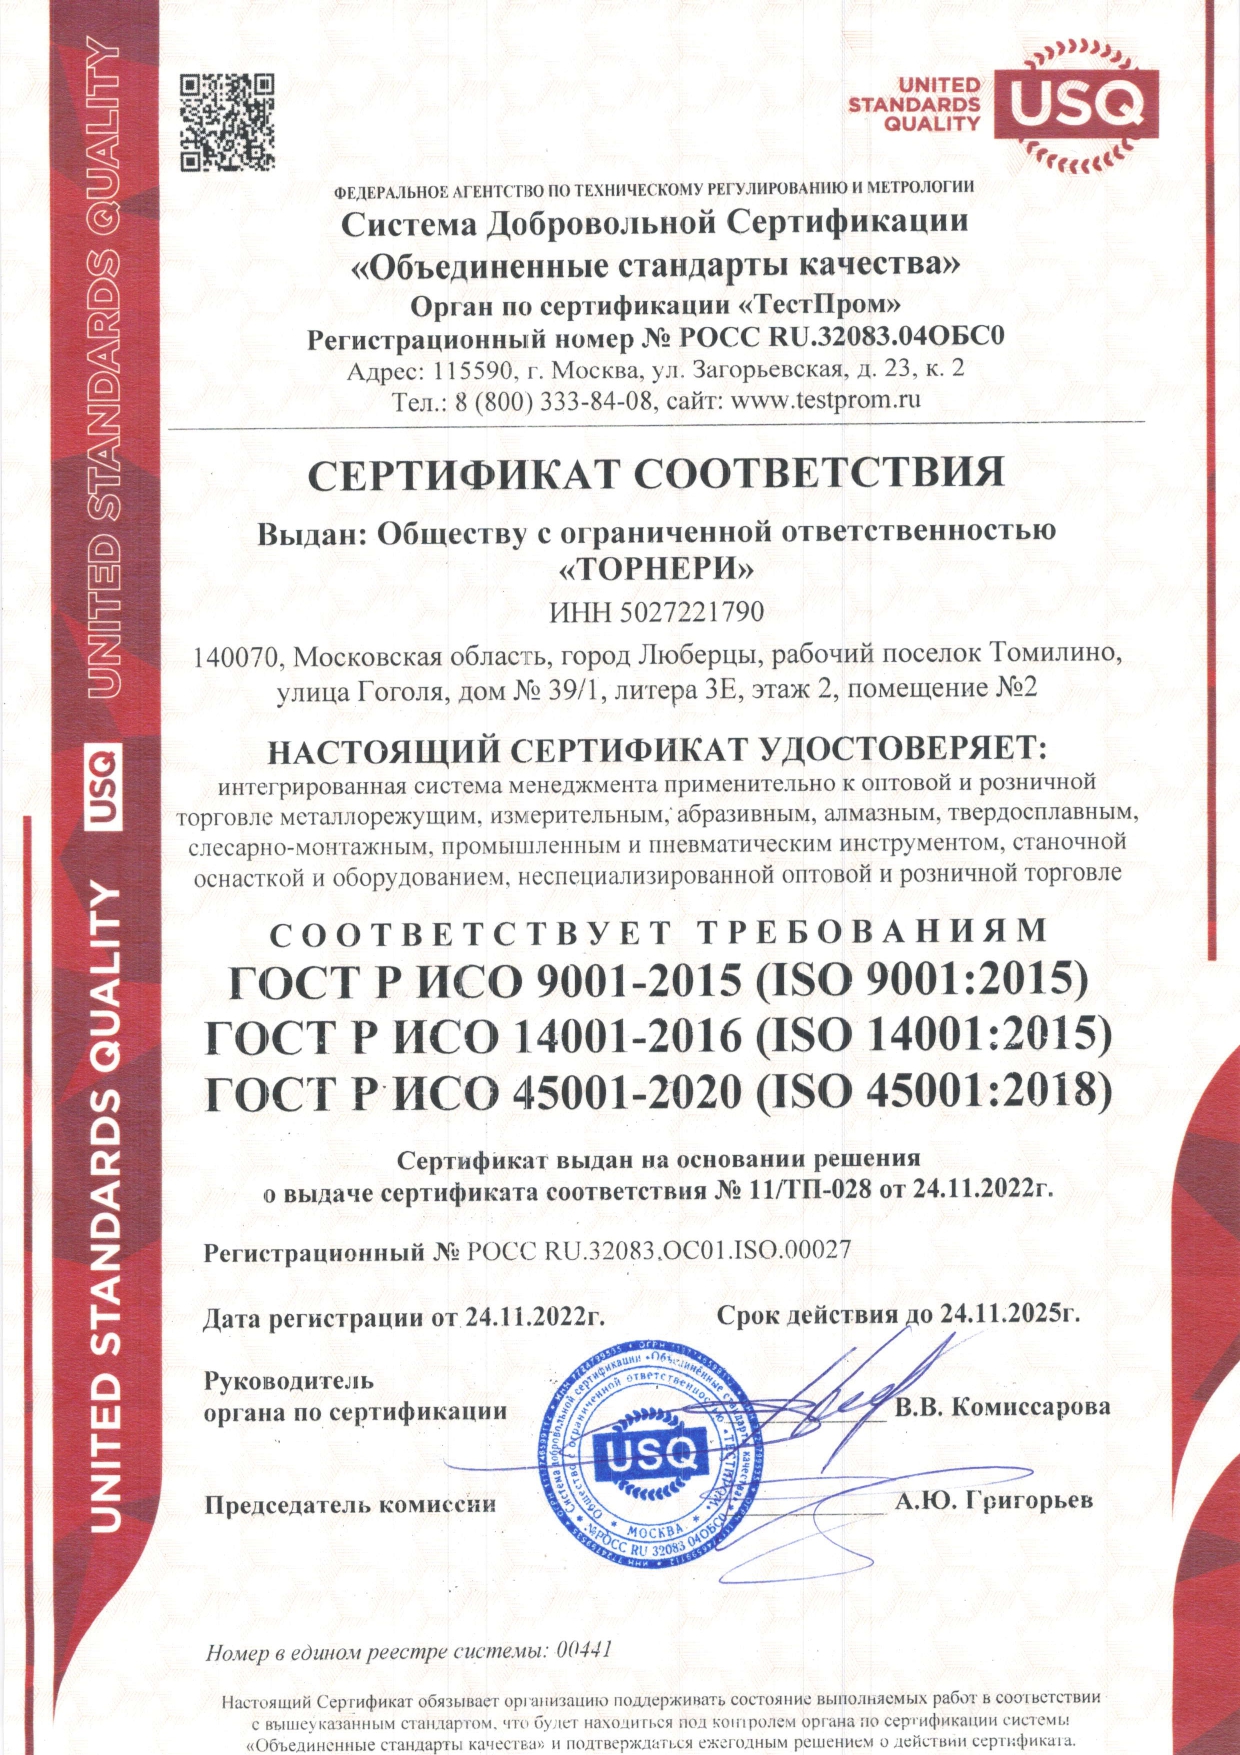 Сертификат соответствия ИСО 9001-2015 TORNERI